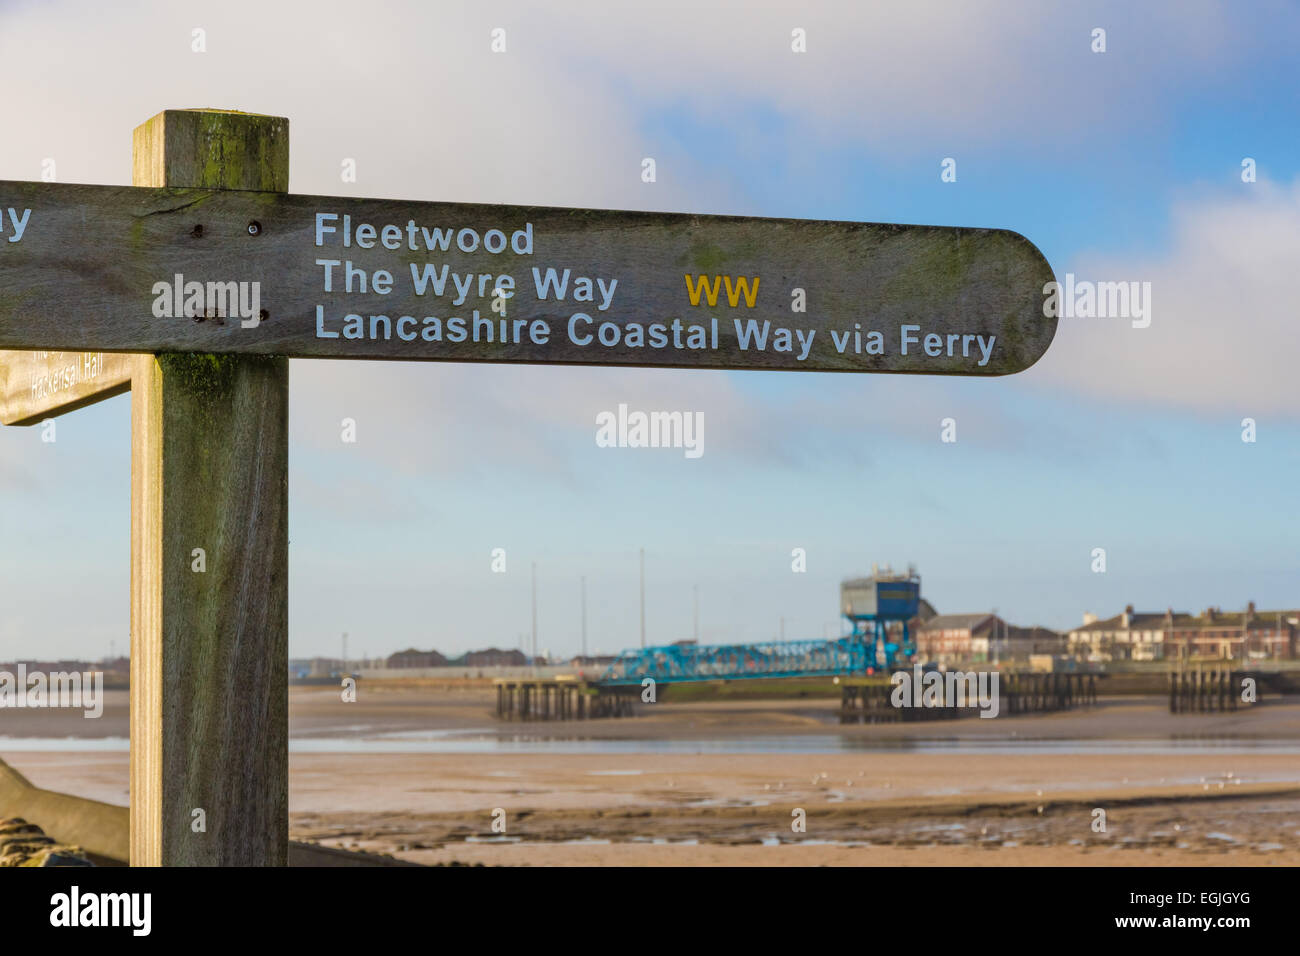 Hölzerne Richtung Zeichen für Fleetwood, Wyre übrigens Küstenschifffahrt Route. Stockfoto